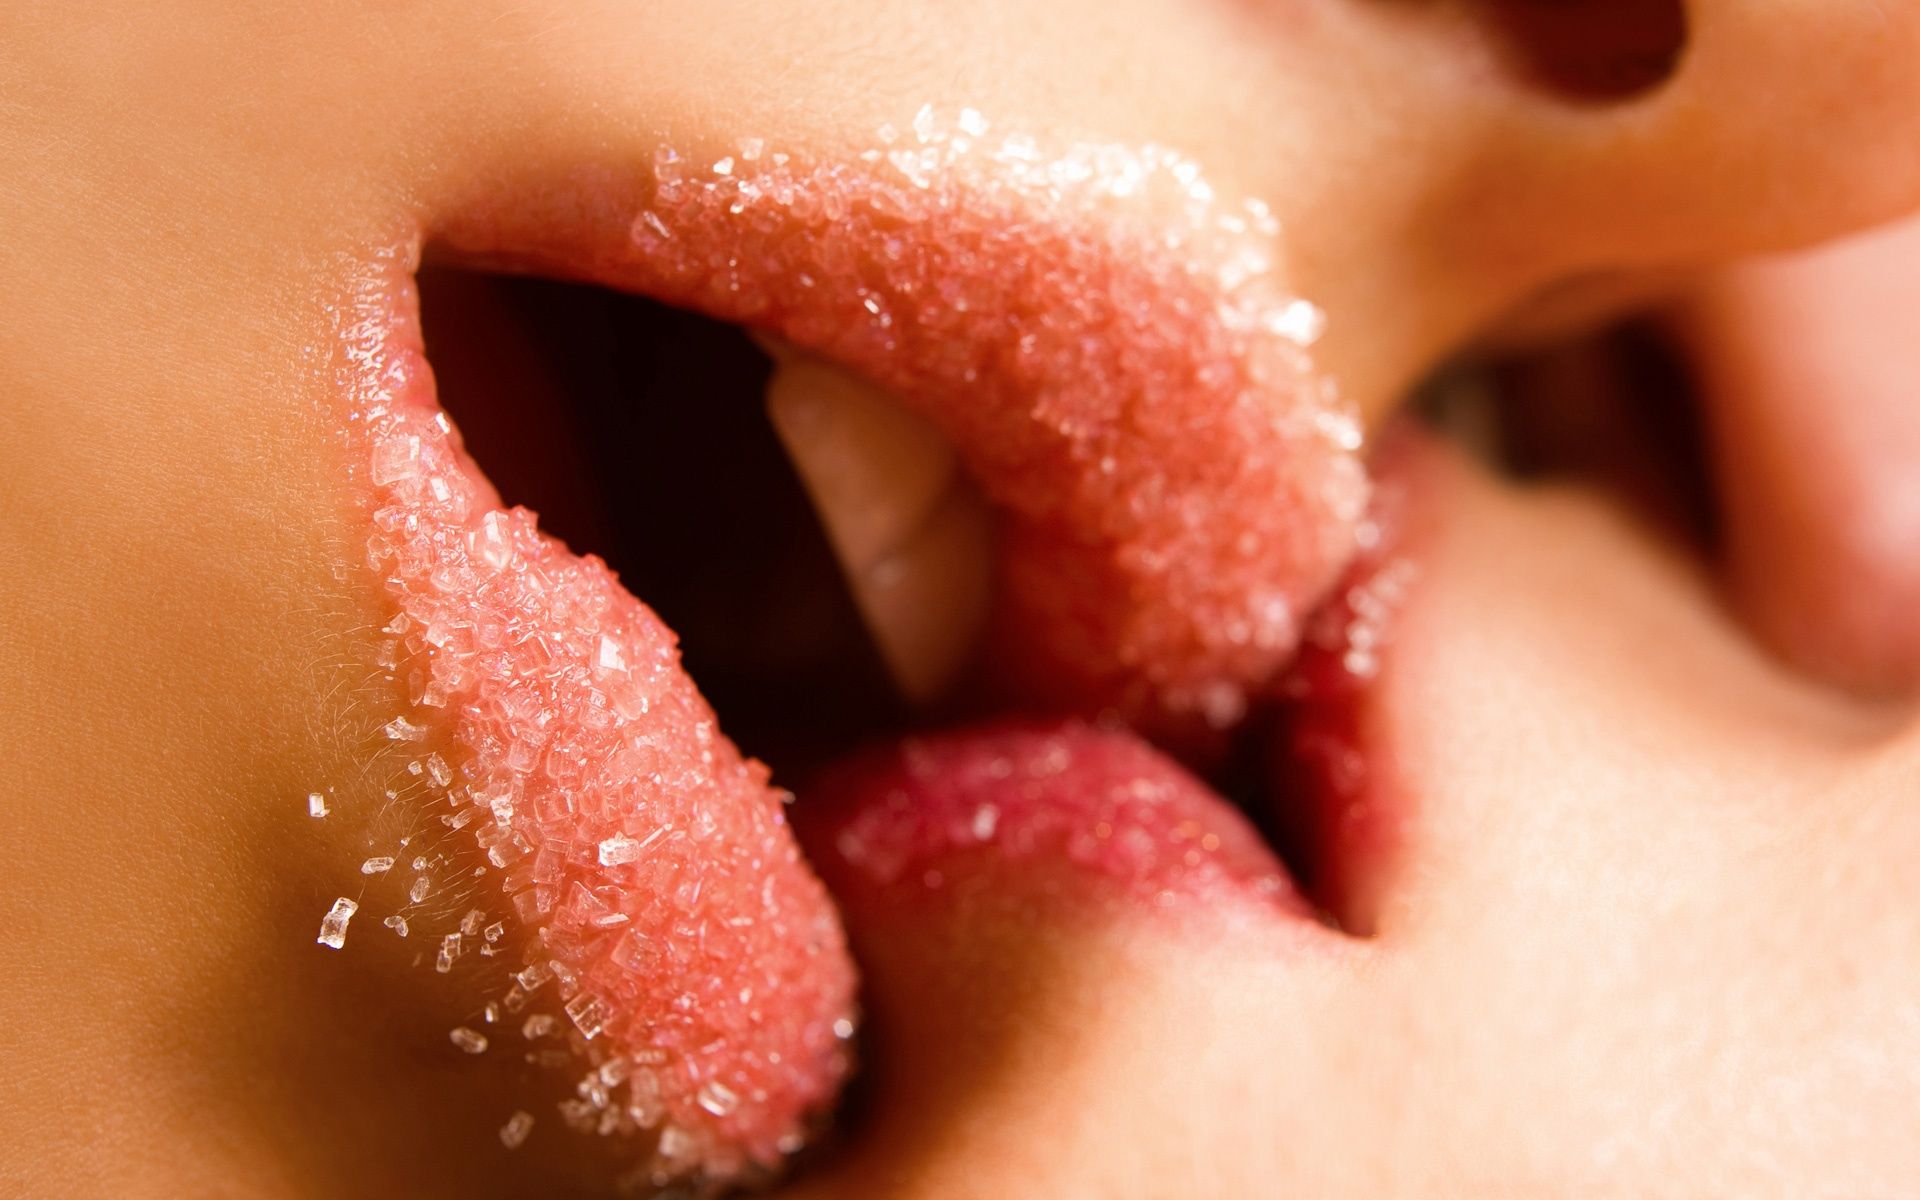 lippen kuss wallpaper herunterladen,lippe,mund,zunge,nahansicht,rosa